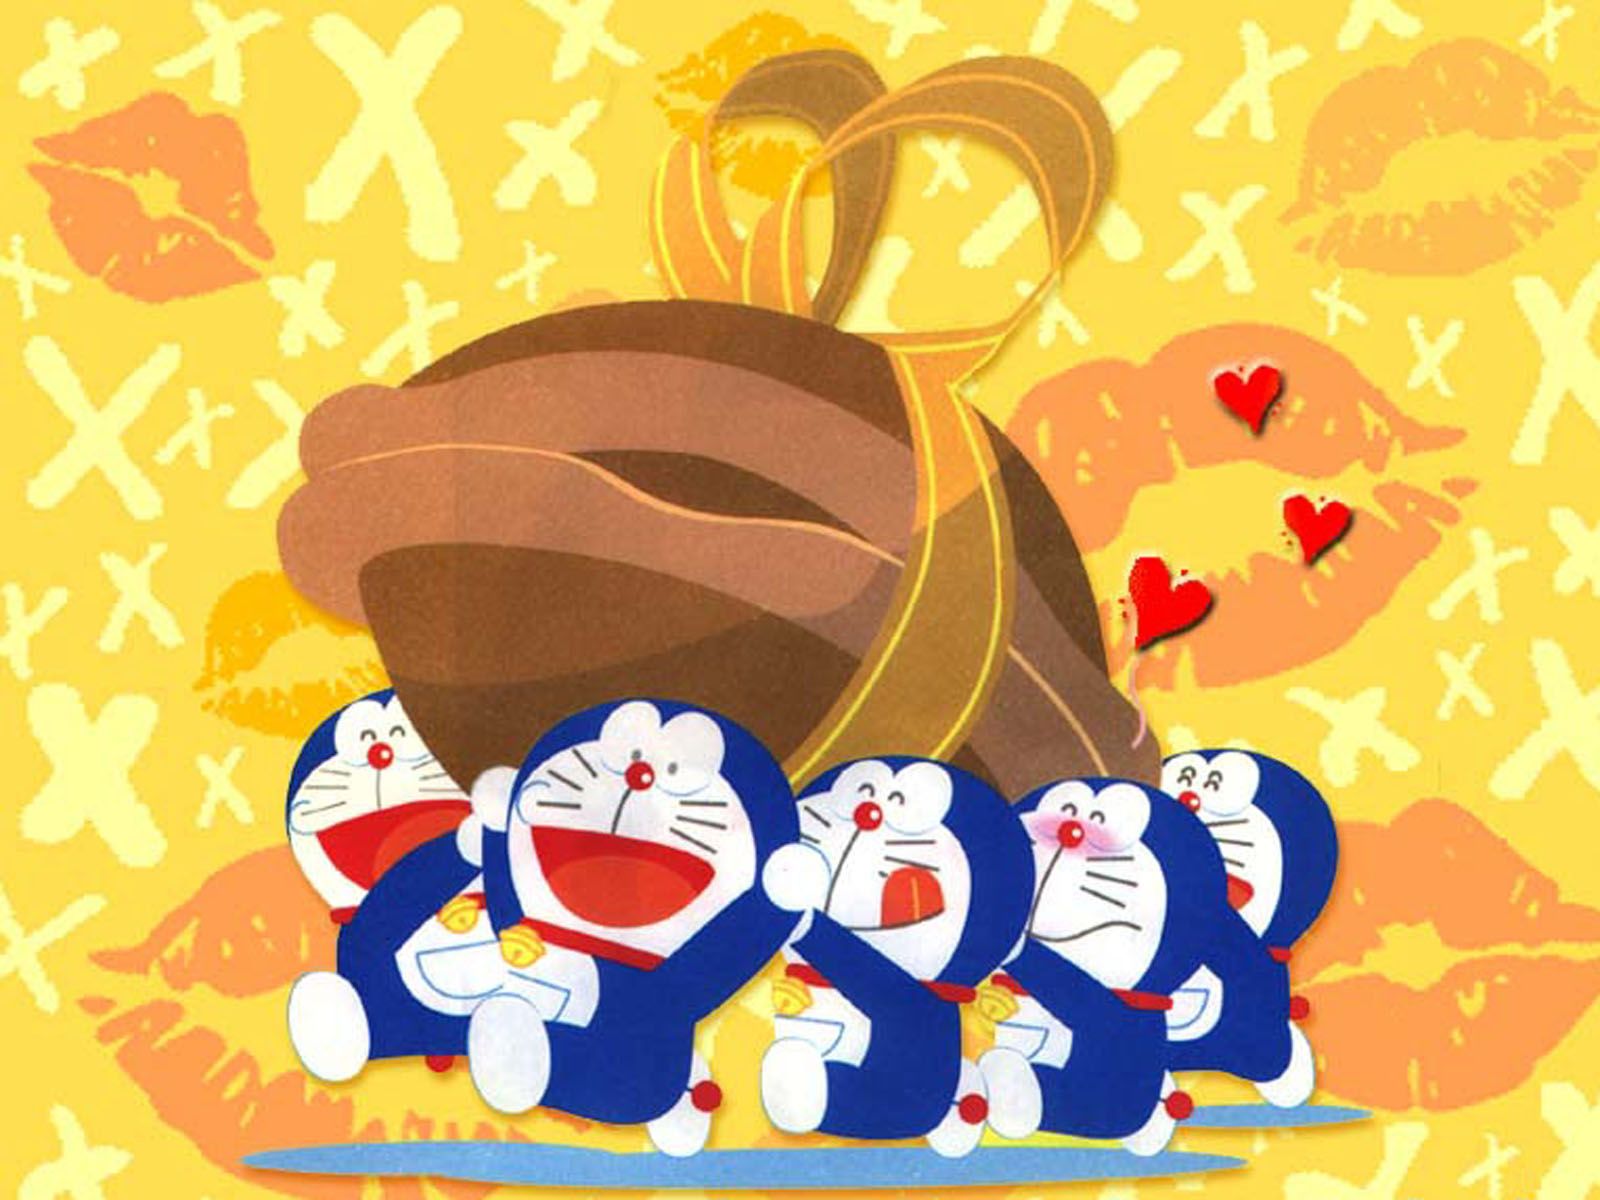 Doraemon Wallpapers,Doraemon Wallpapers & Pictures Free Download